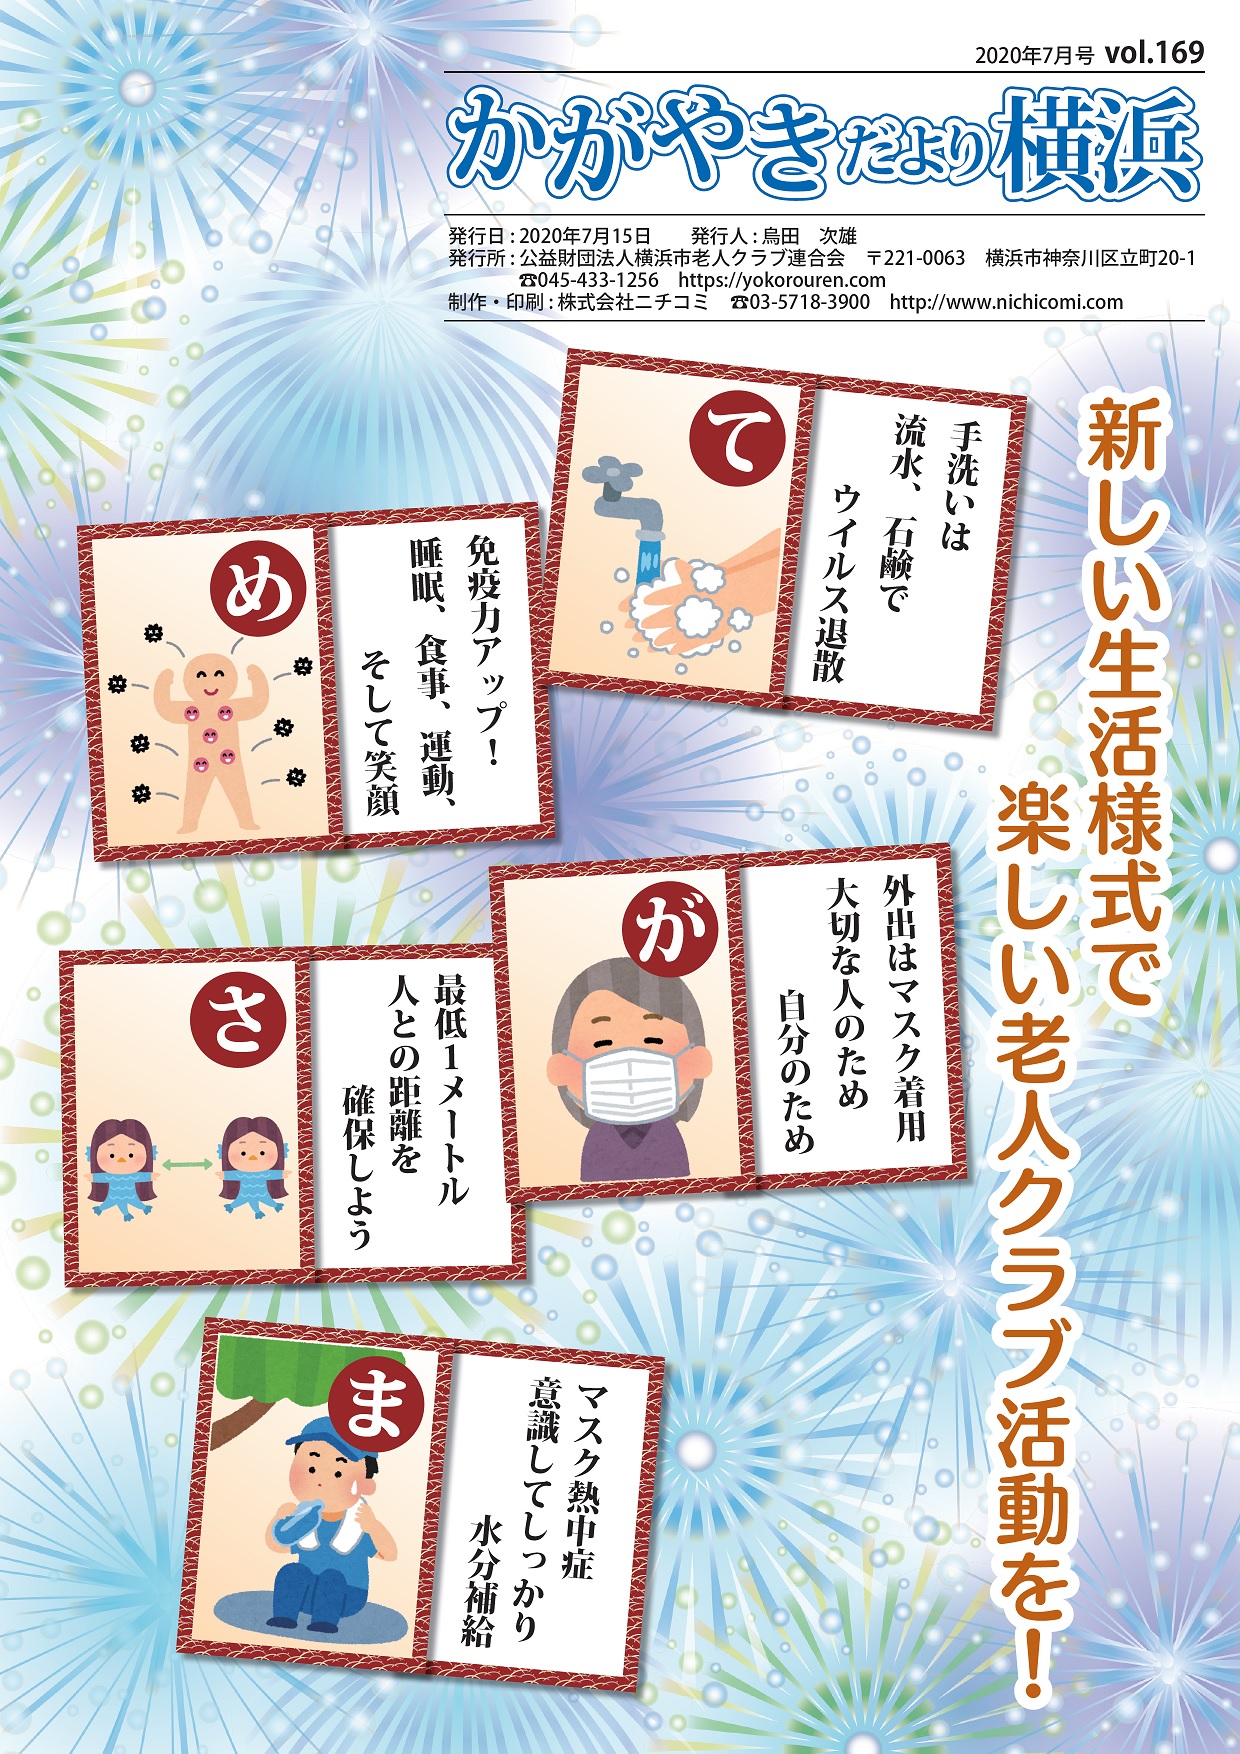 「かがやきだより横浜」2020年7月号(169号)を発行しましたに挿入されたアイキャッチ画像